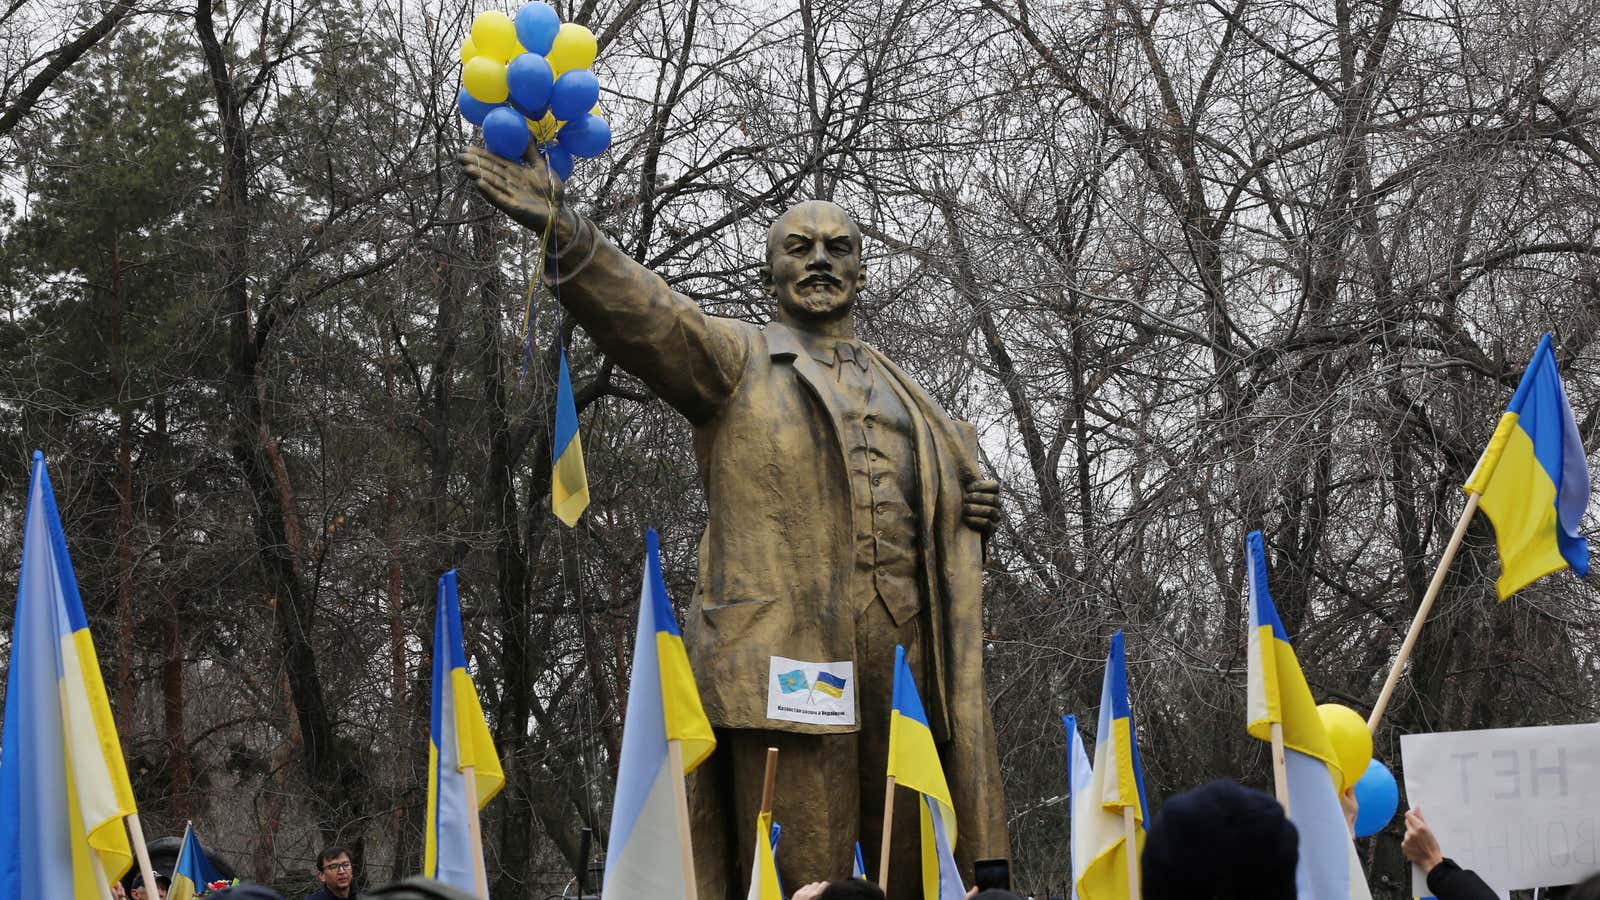 Protestors gather in support of Ukraine near a Lenin statue in Almaty, Kazakhstan